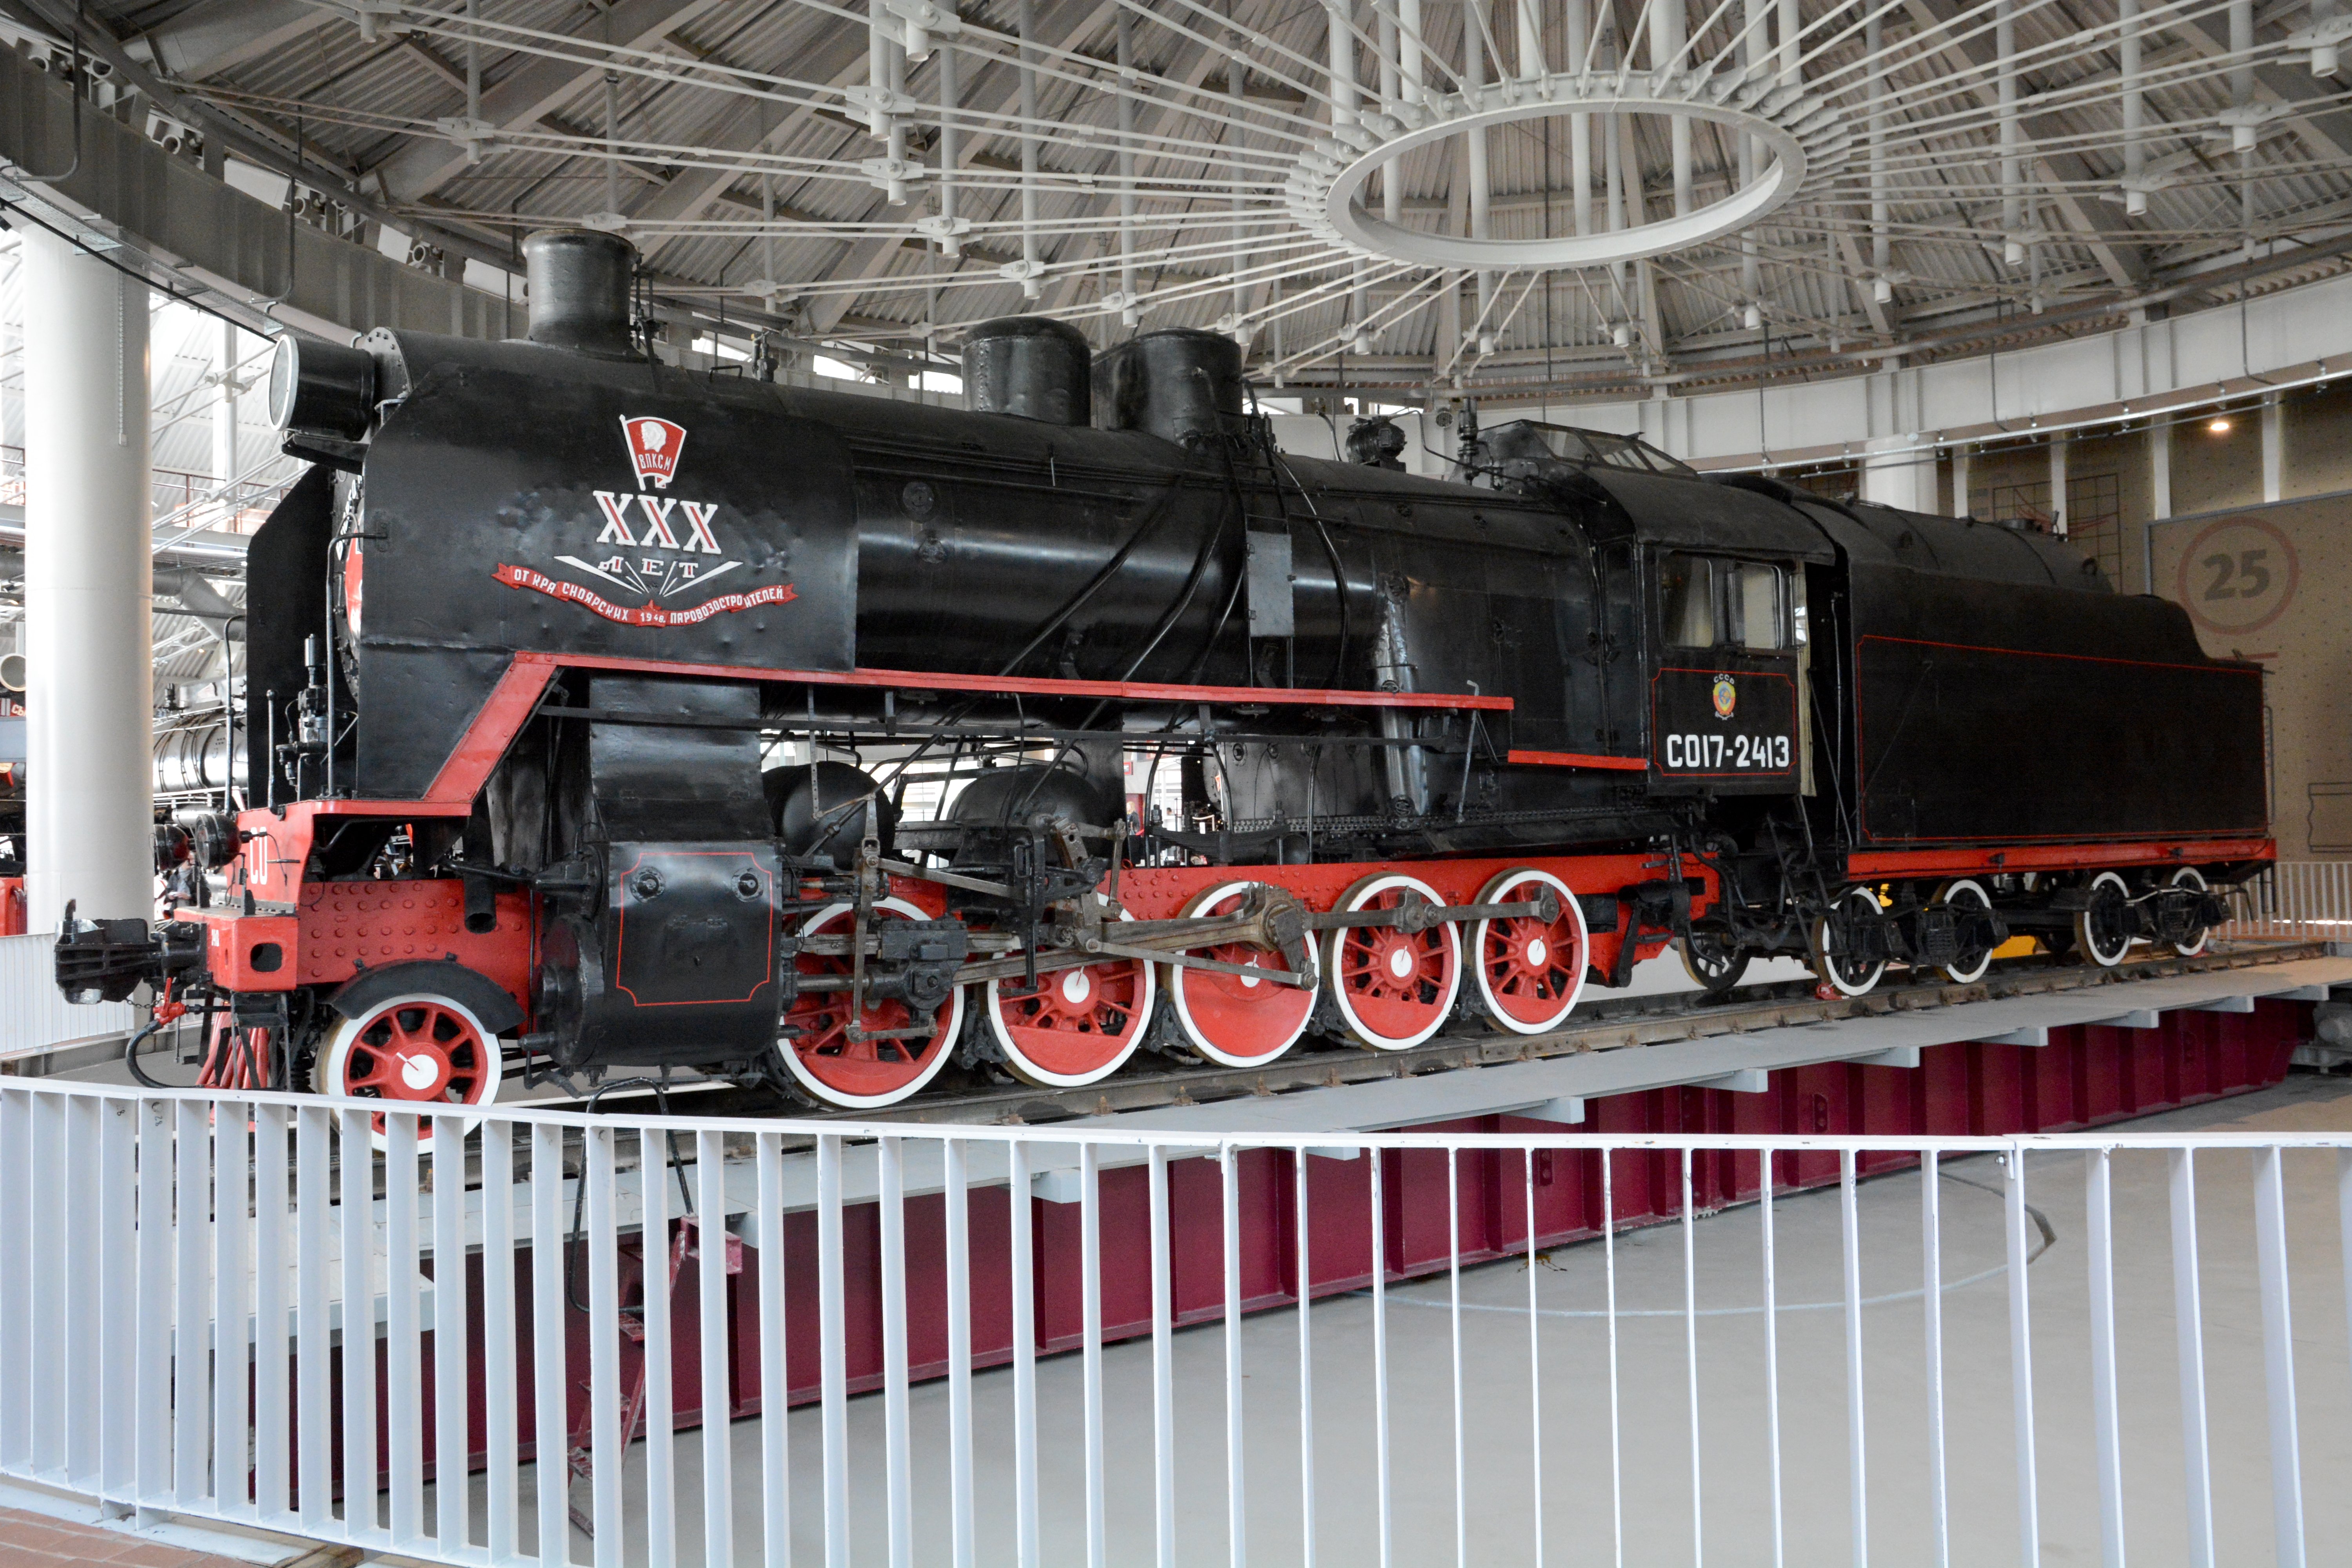 музей железнодорожного транспорта в санкт петербурге на балтийской